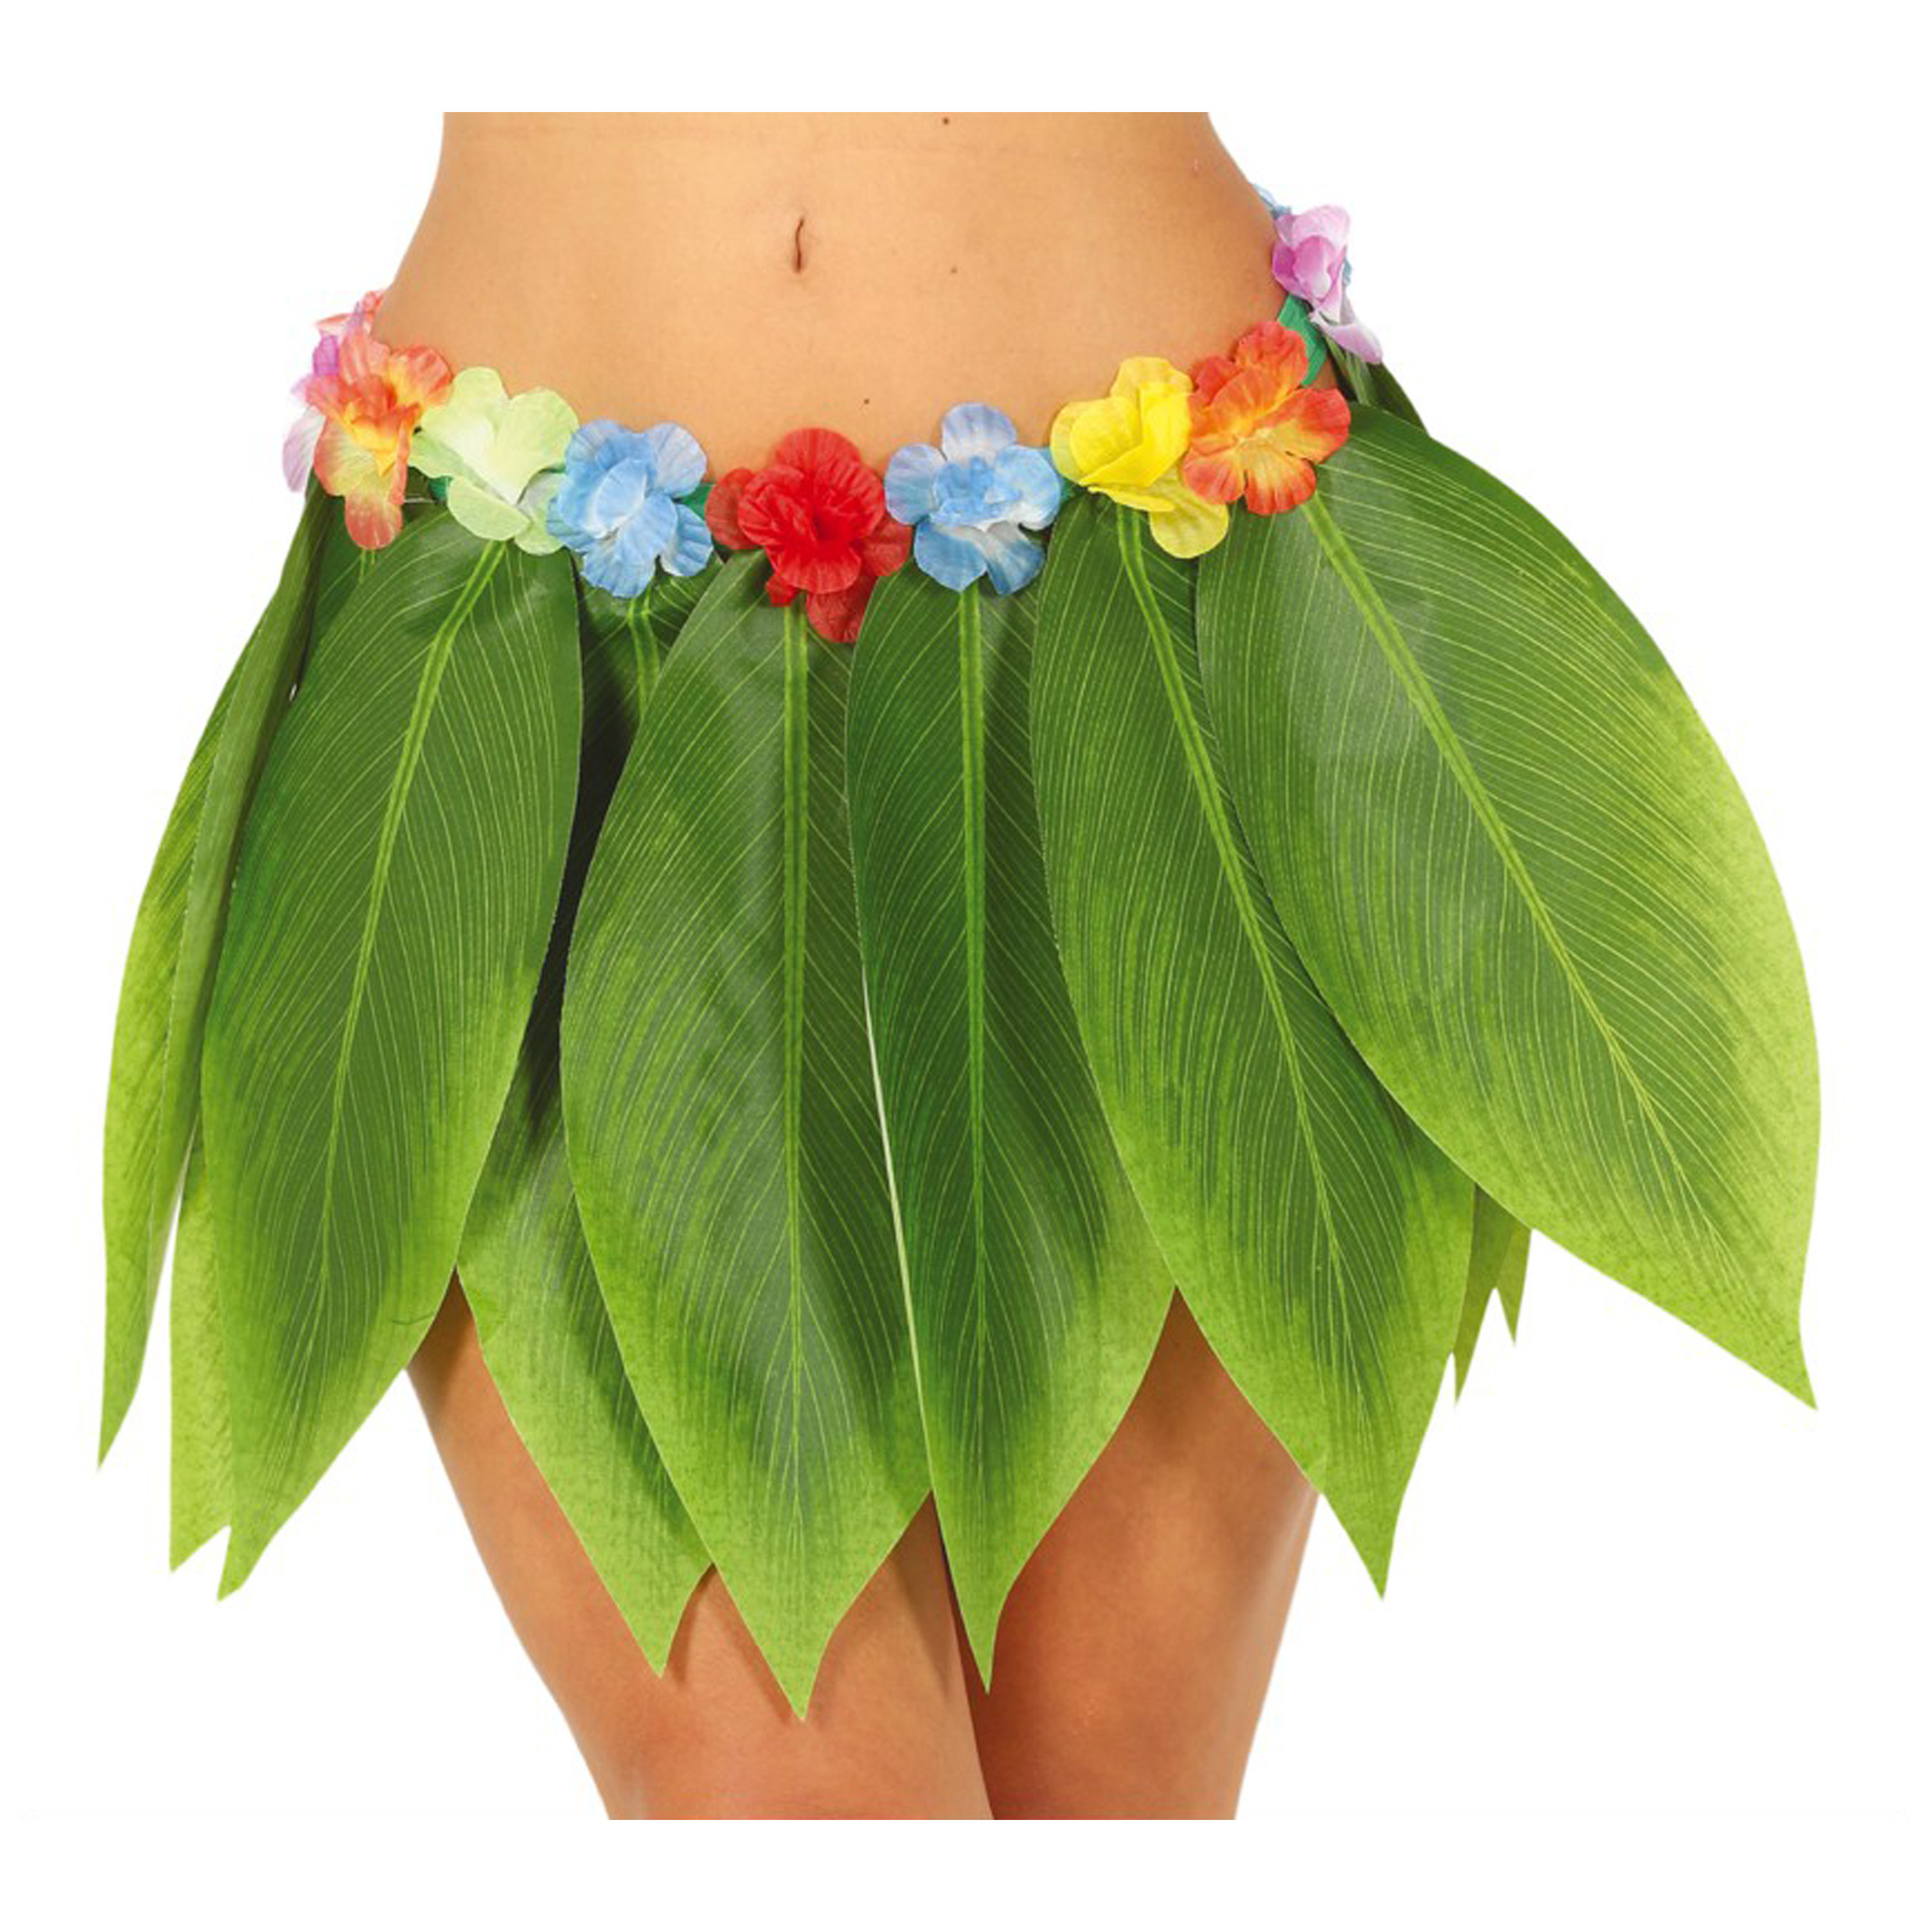 Toppers Hawaii verkleed rokje met bladeren voor volwassenen groen 38 cm hoela rokje tropisch